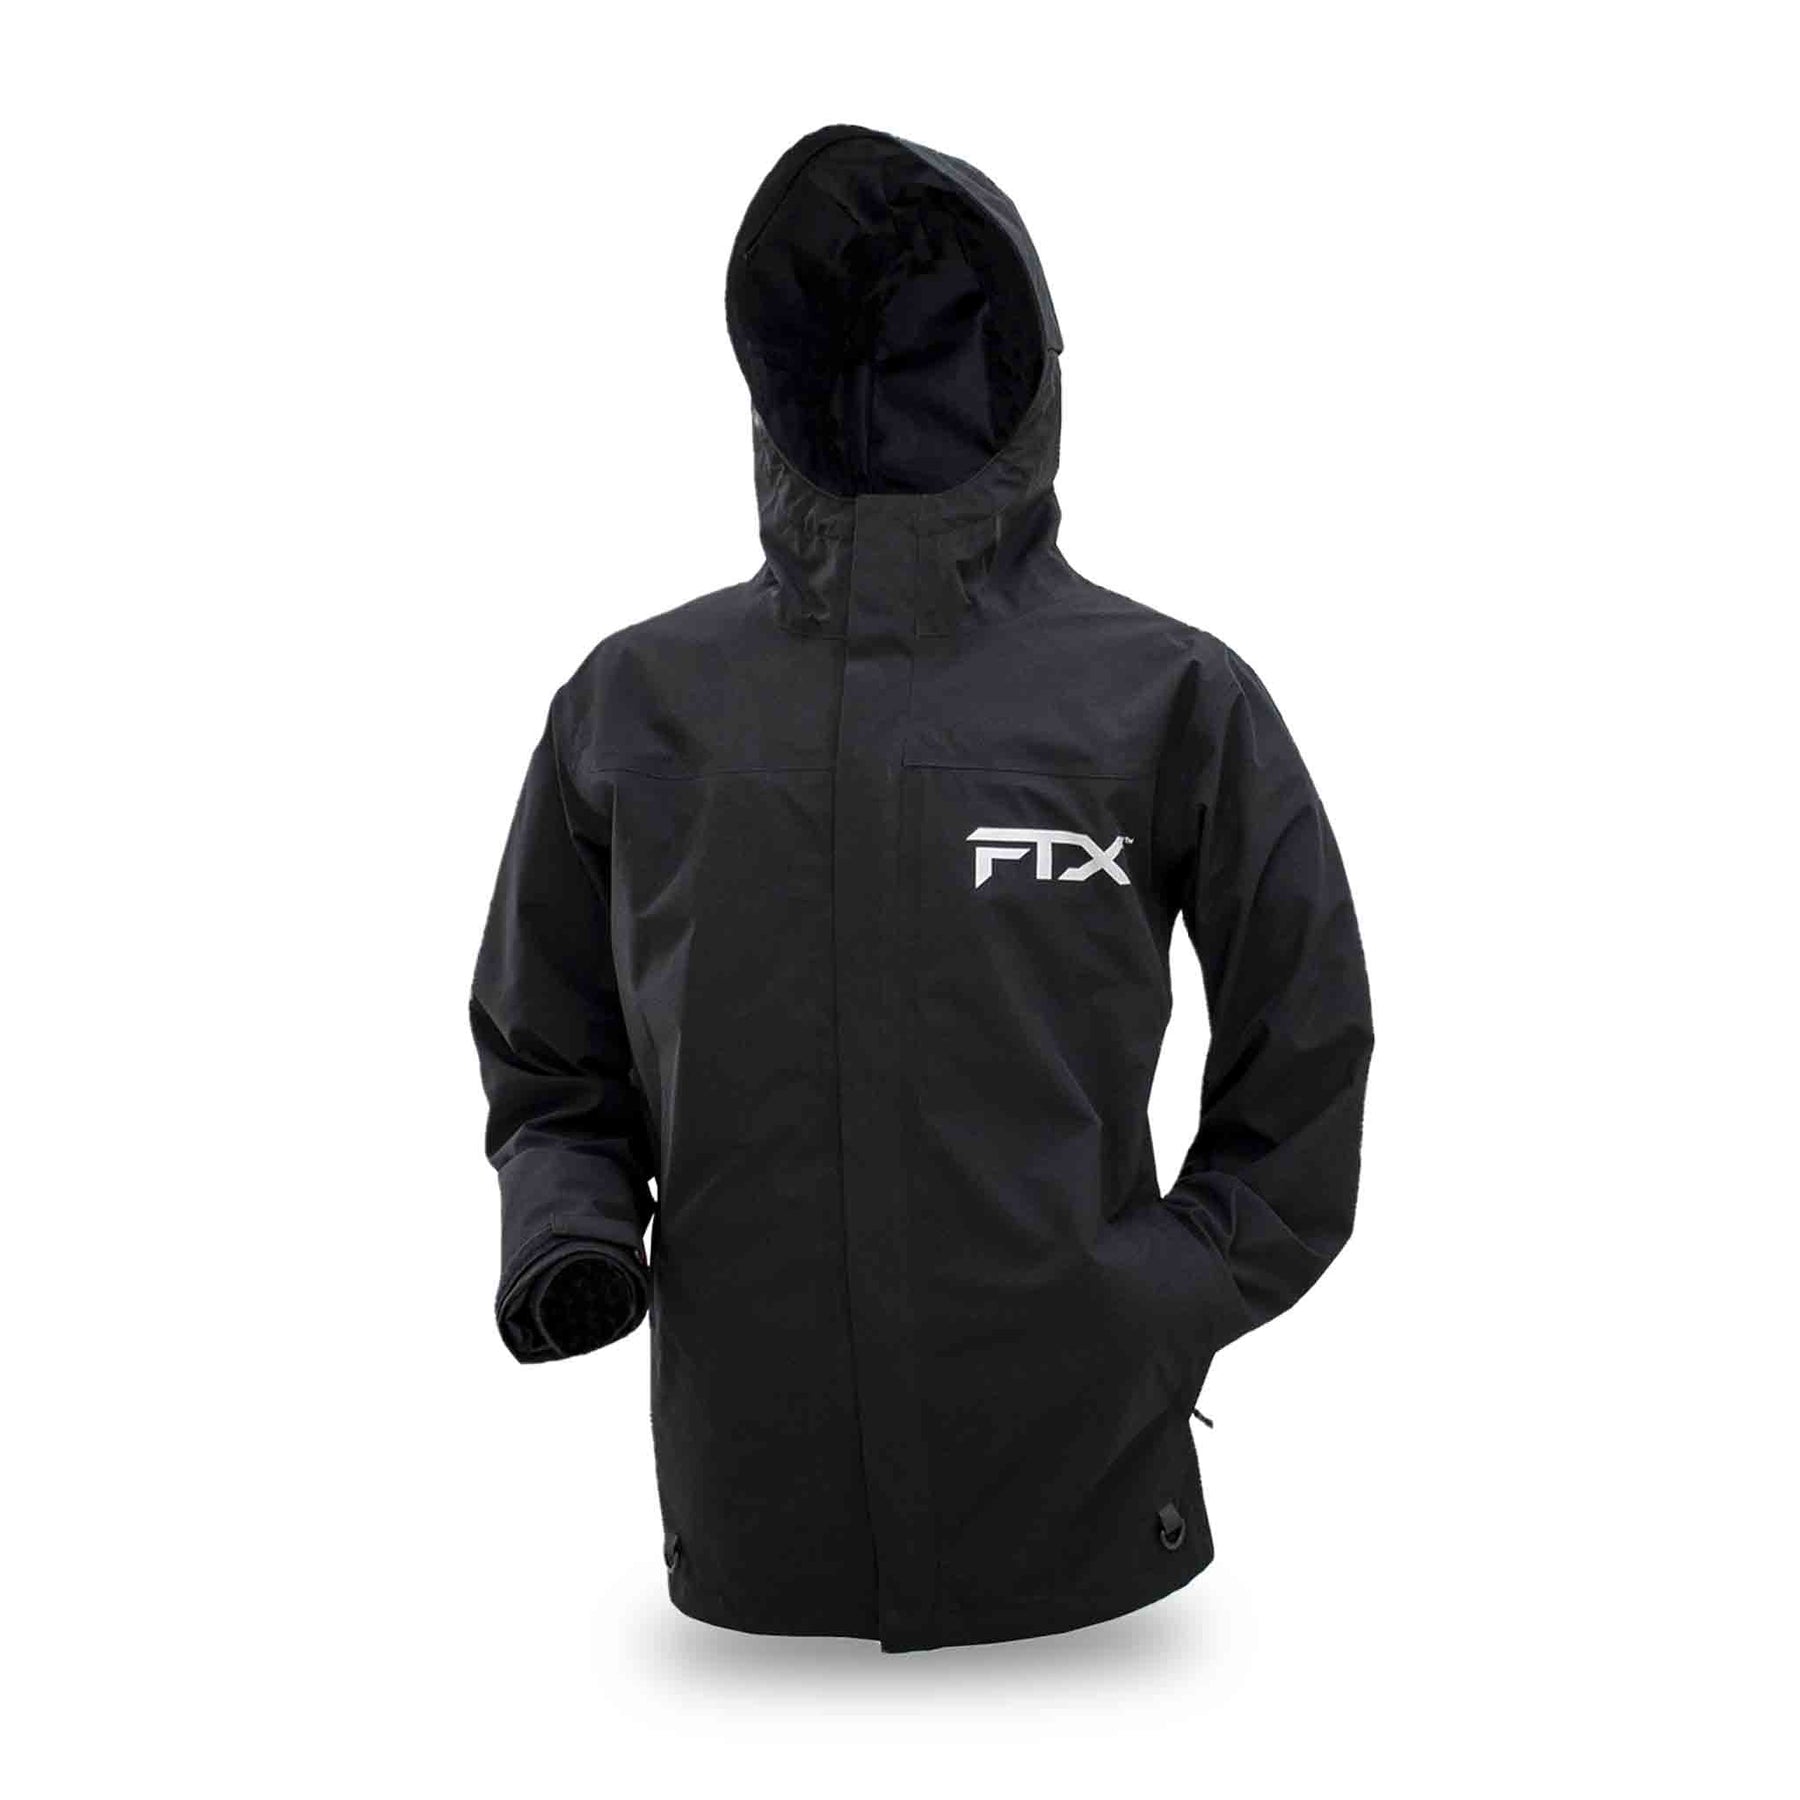 Frogg Toggs FTX Armor Fishing Jacket | Fishing Apparel Black / M